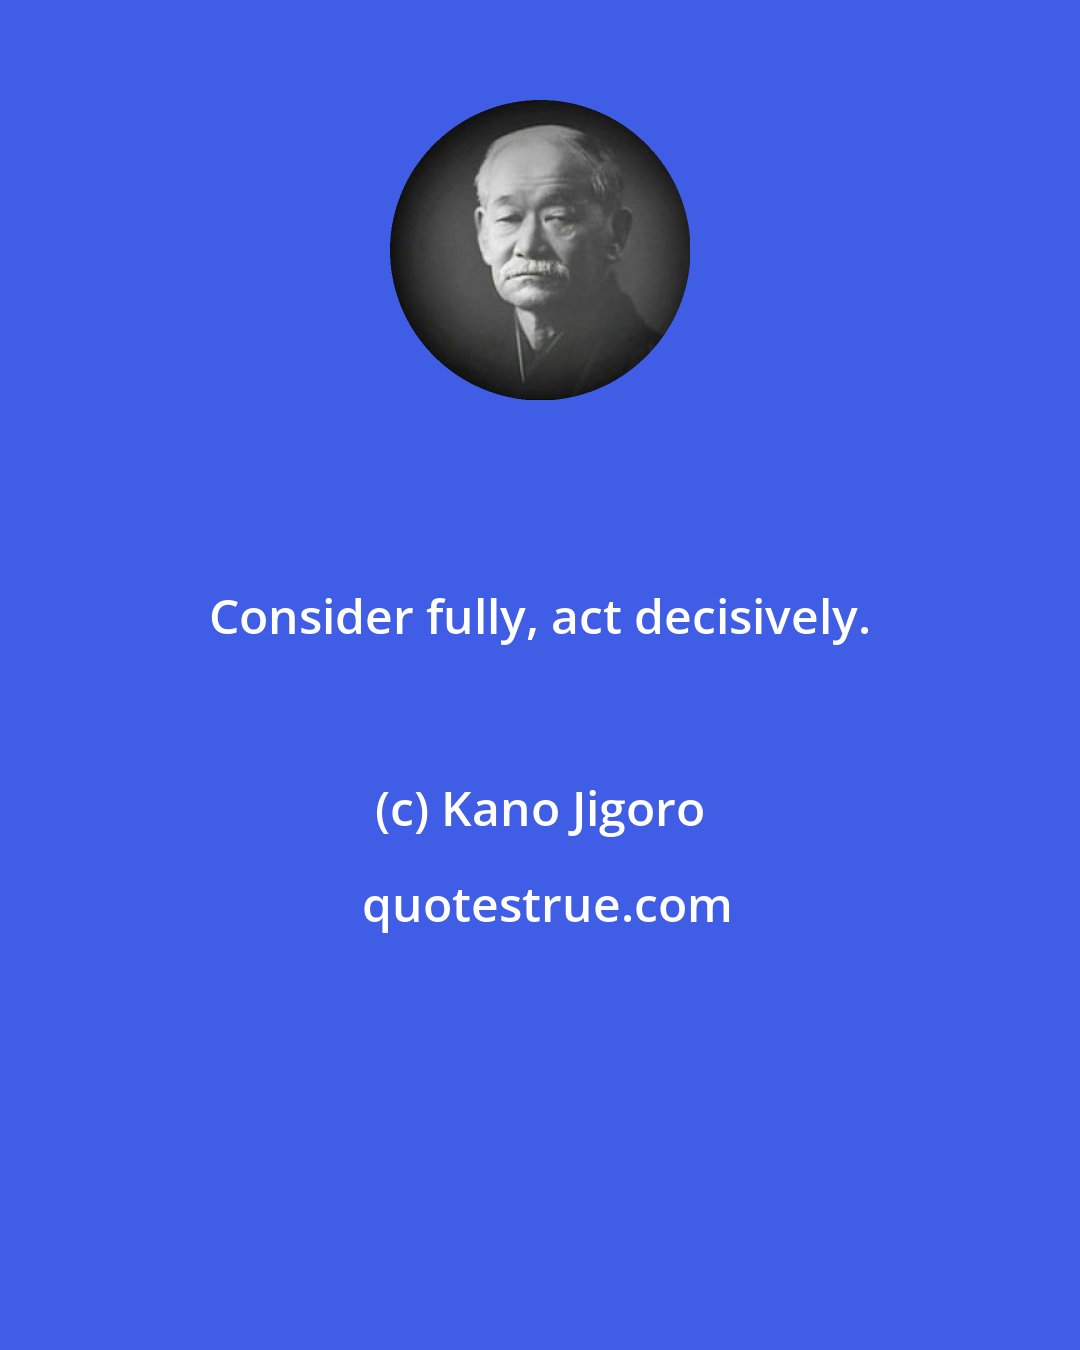 Kano Jigoro: Consider fully, act decisively.